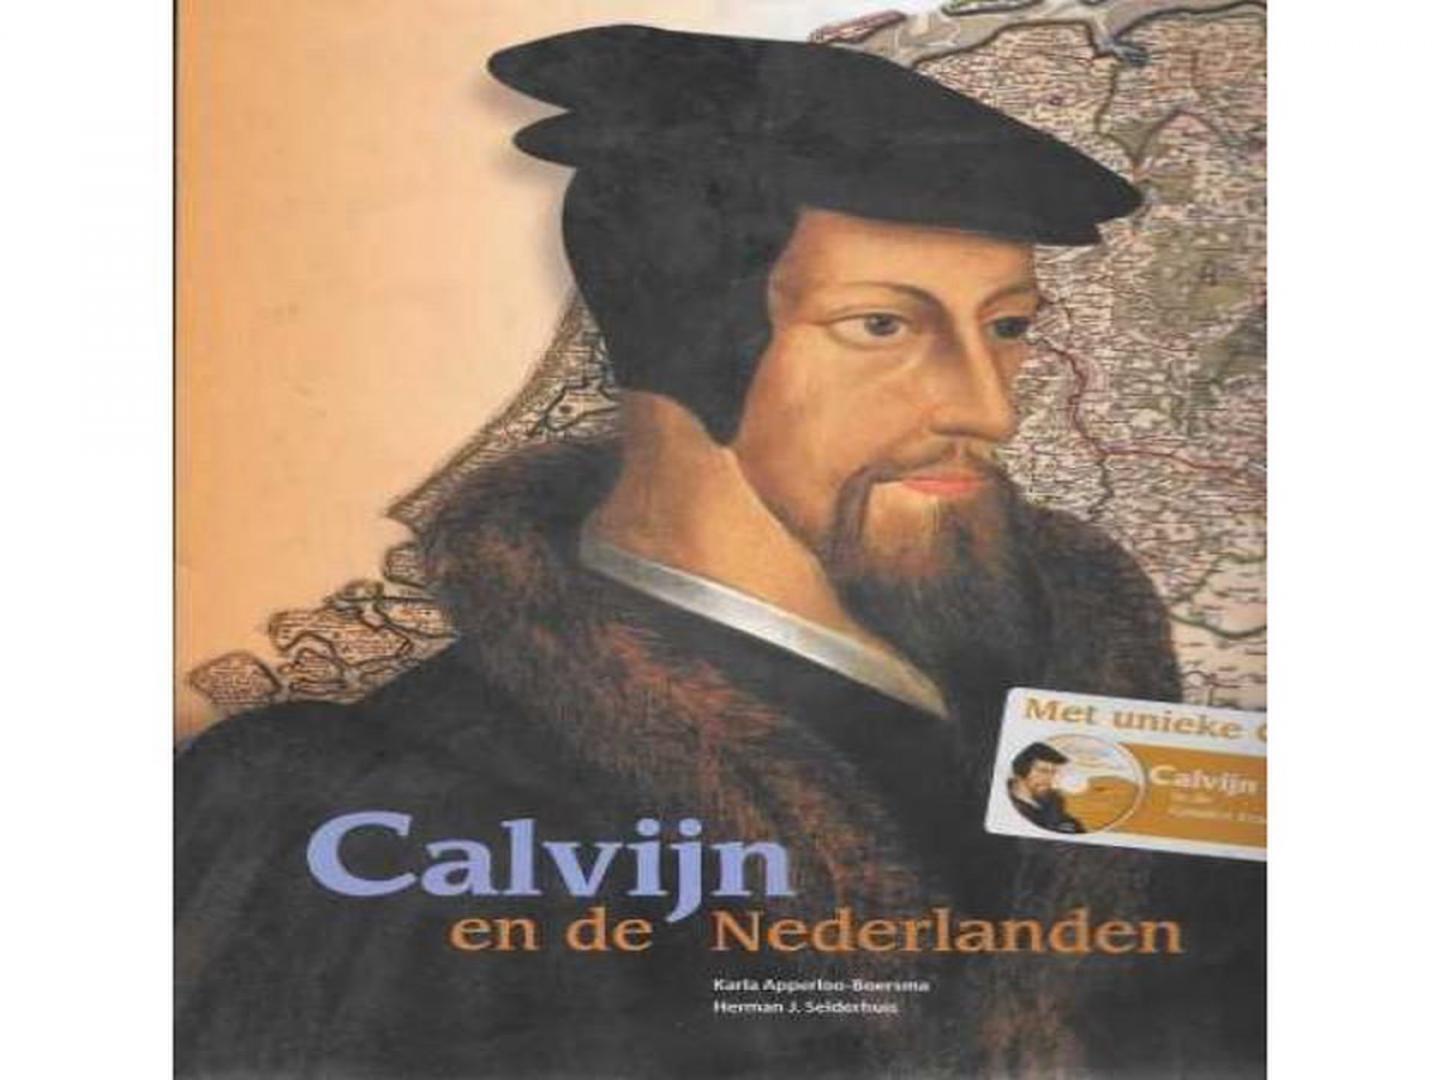 Apperloo-Boersma, Karla & Herman J. Selderhuis - Calvijn en de Nederlanden